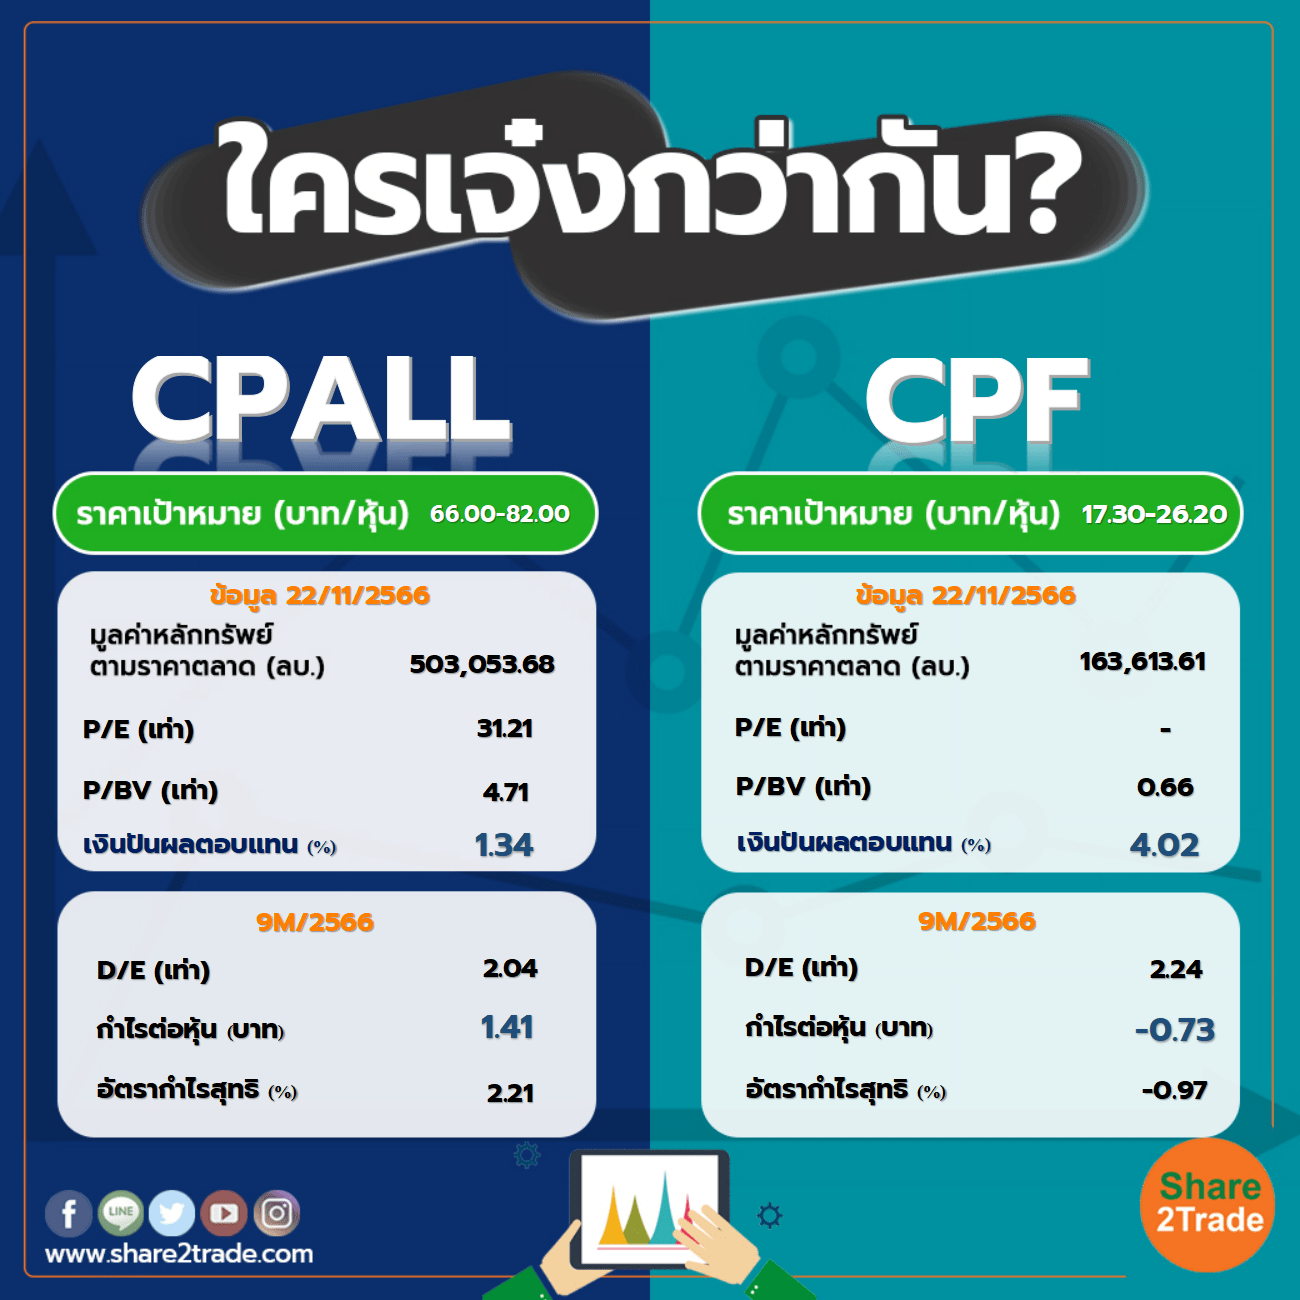 ใครเจ๋งกว่ากัน "CPALL" VS "CPF"